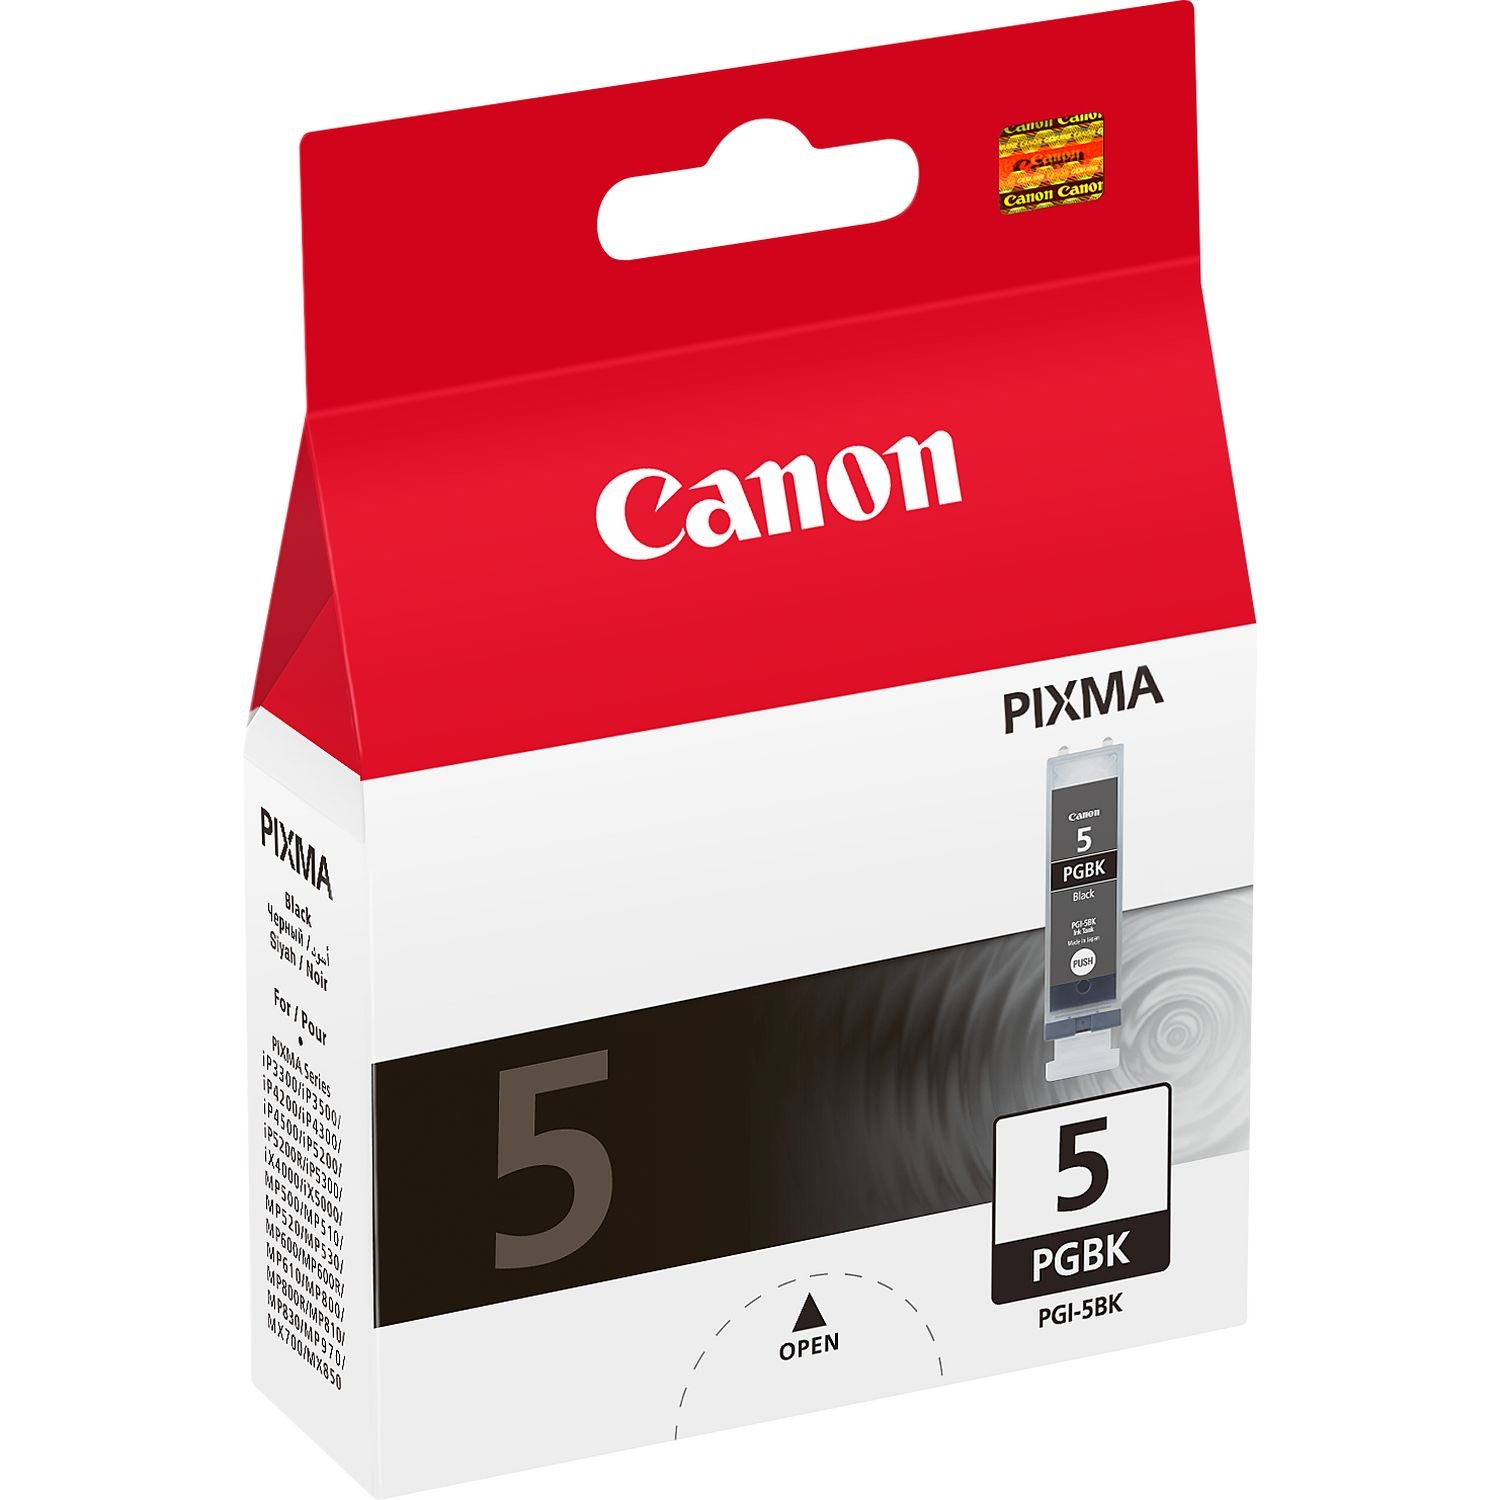 Canon pack de 4 cartouches pgi-570/cli-571 pgbk/bk/c/m/y - noir + couleur -  La Poste